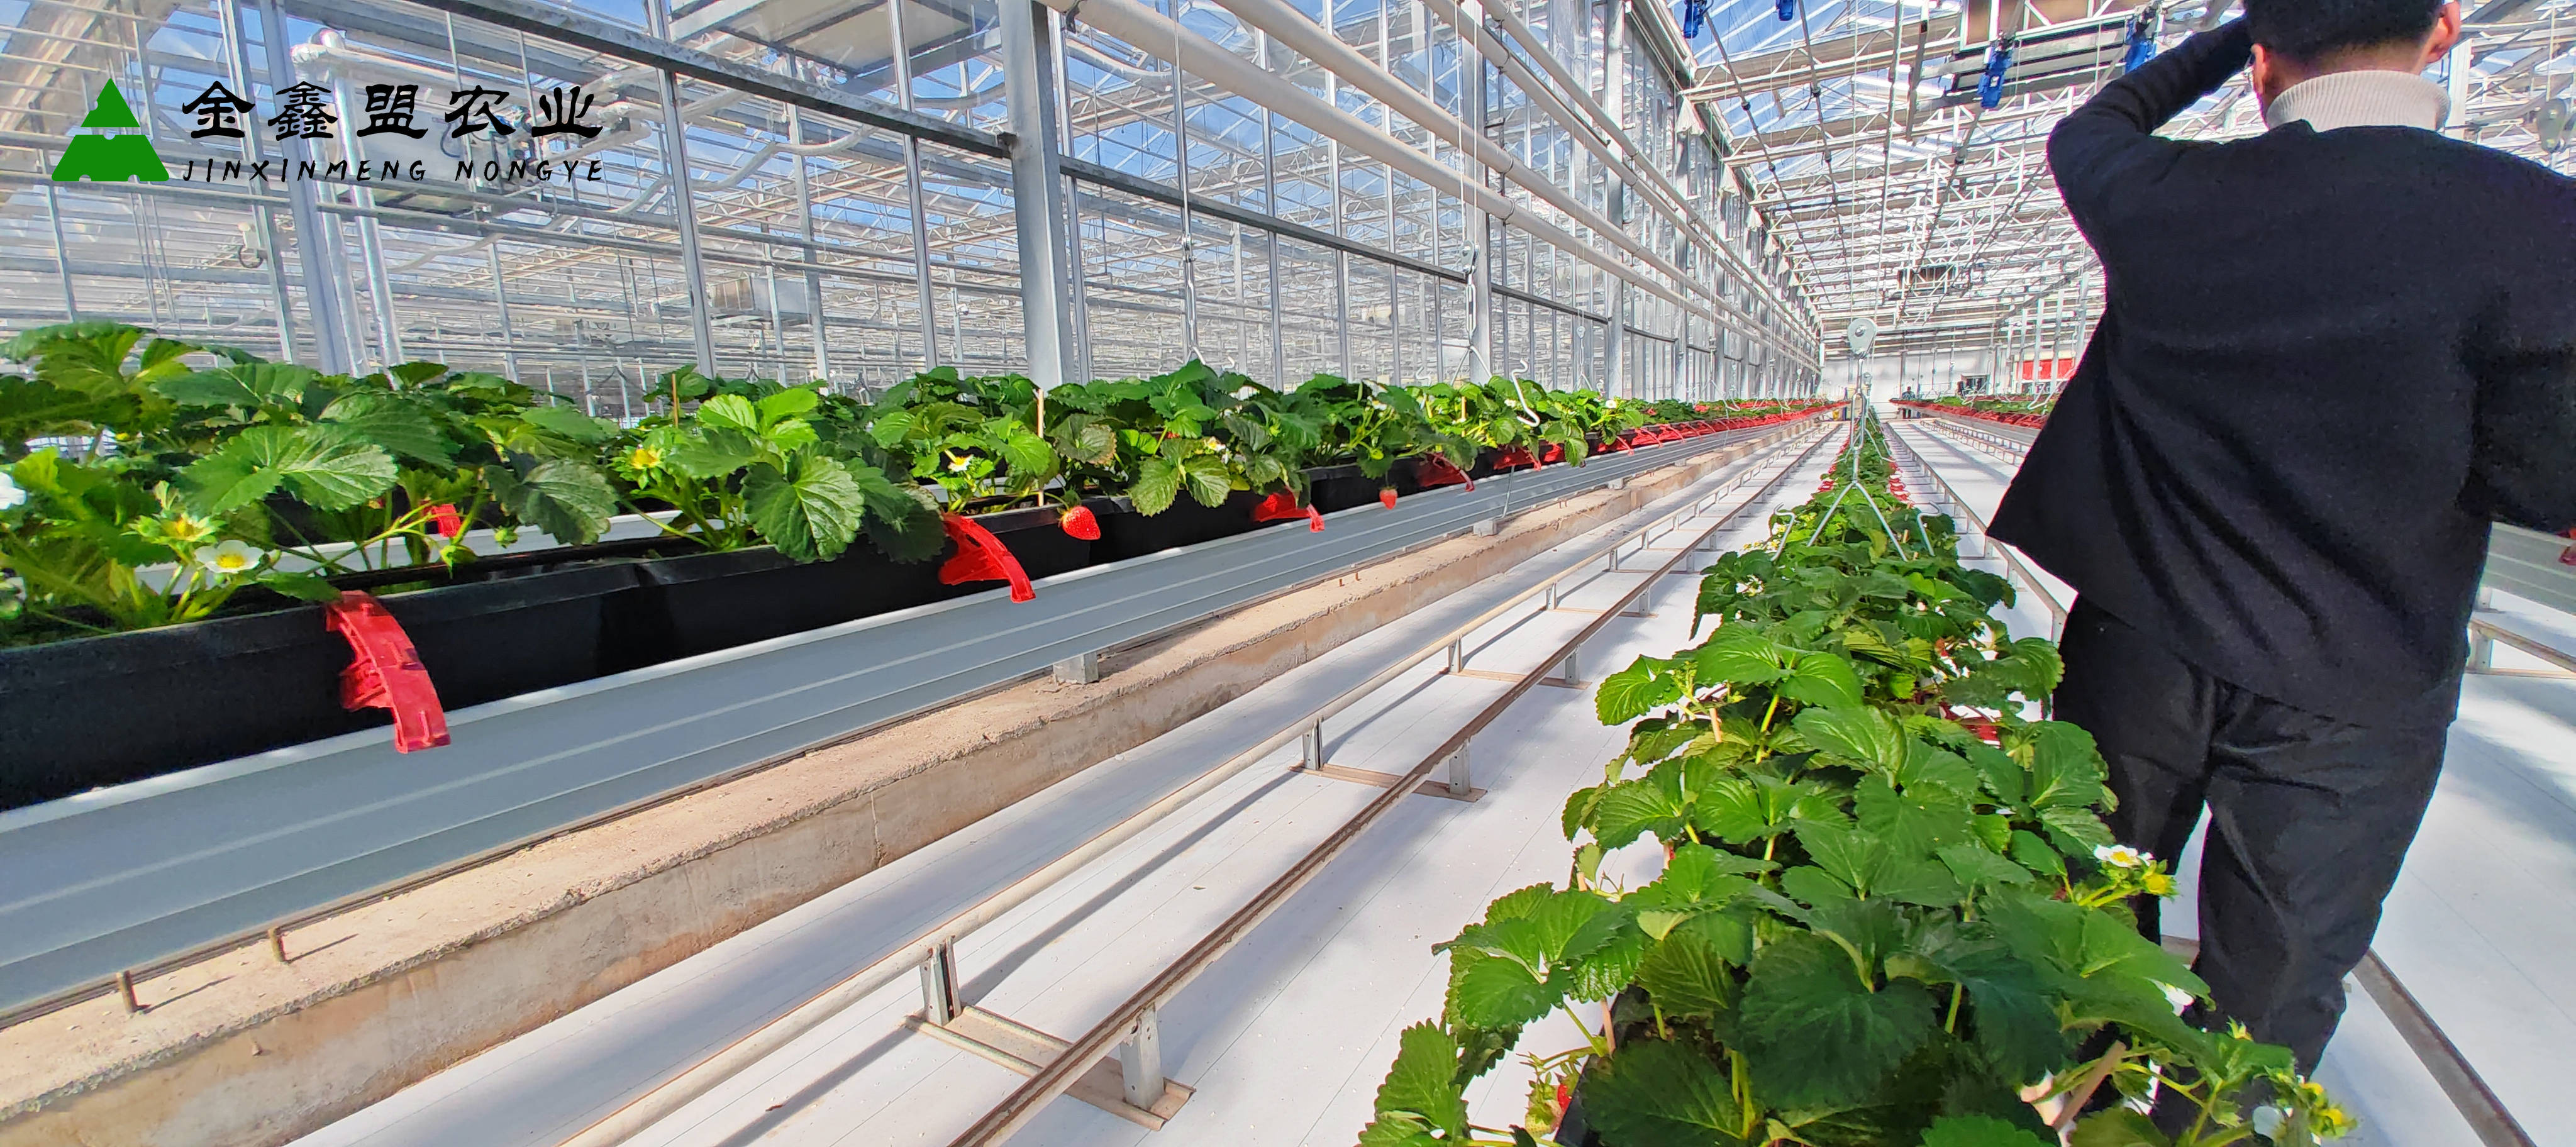 空中草莓设备生产厂家——农业领域的璀璨明珠